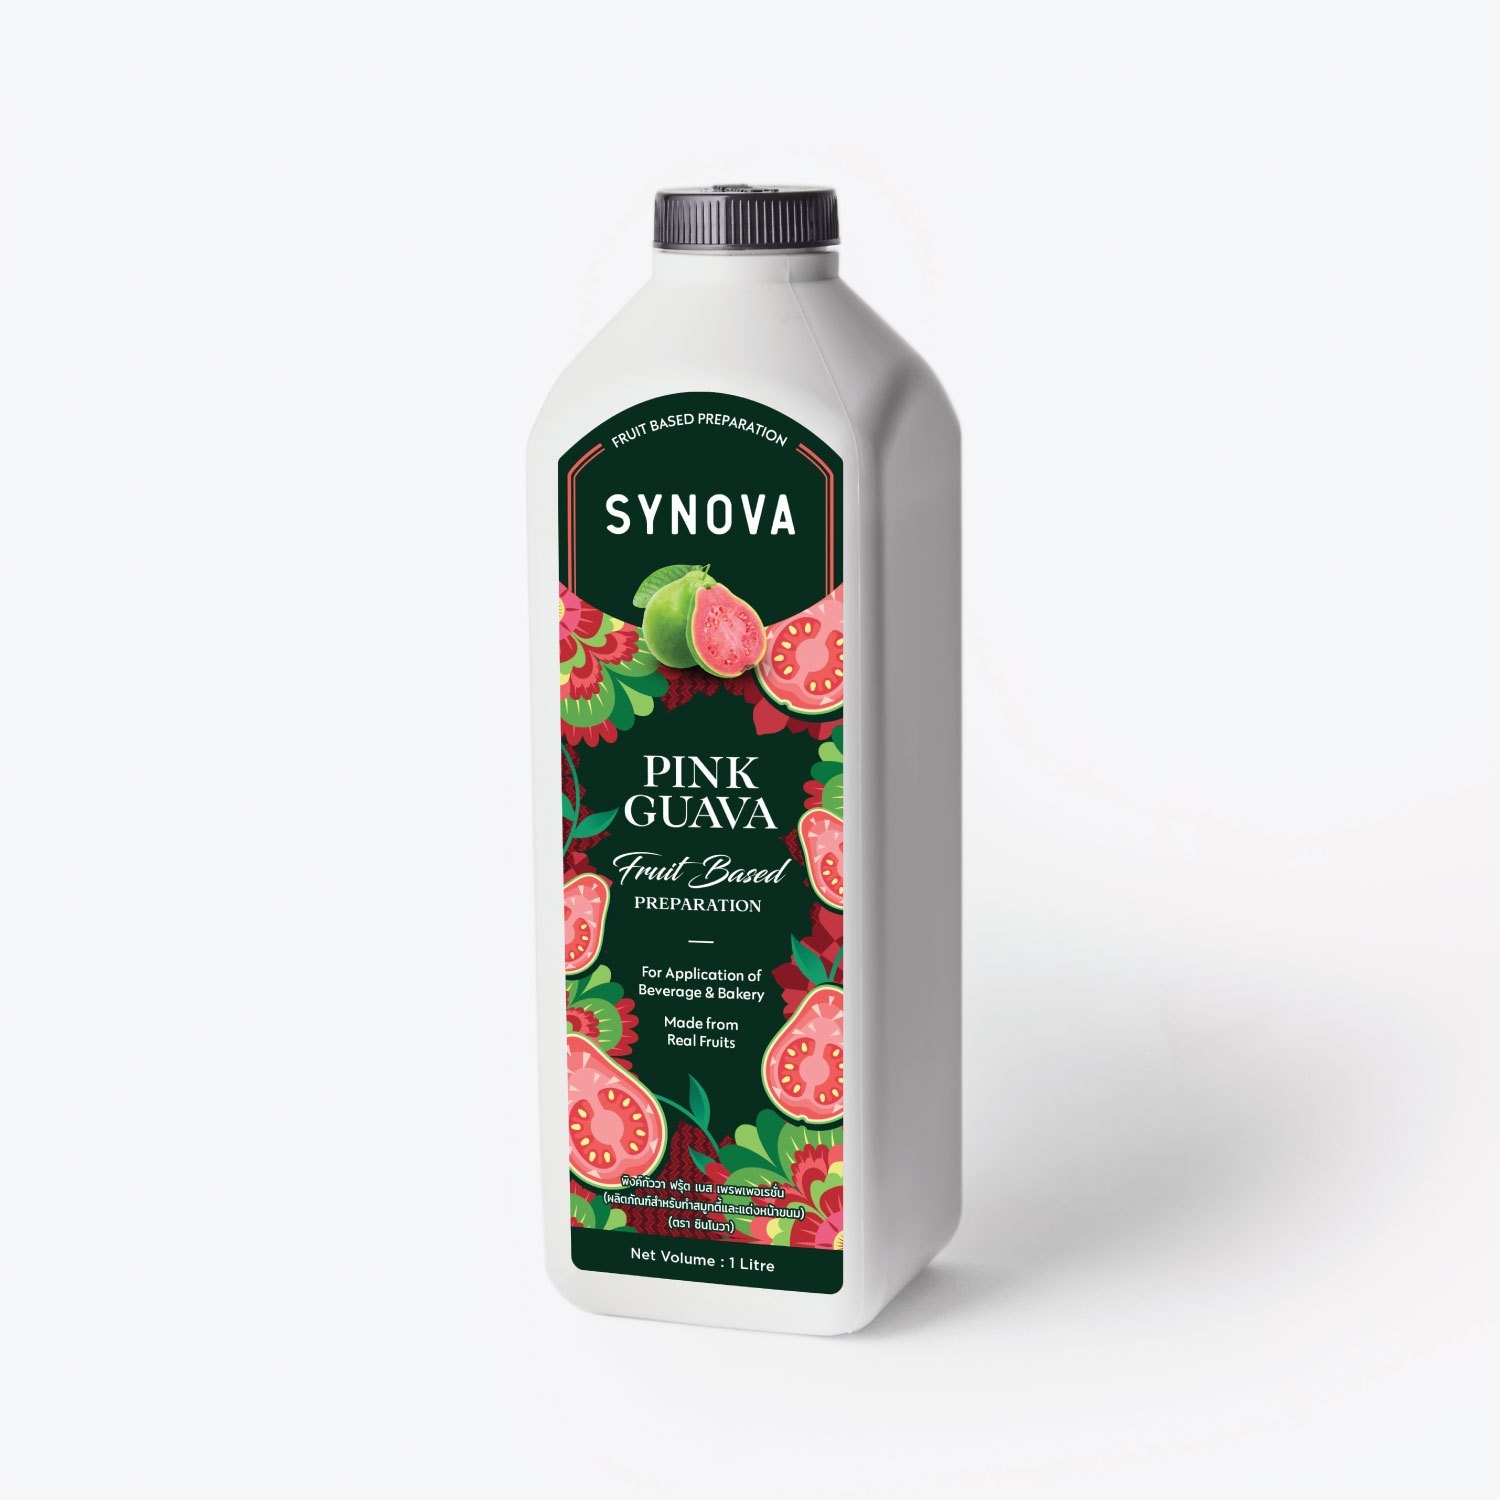 น้ำผลไม้เข้มข้น : SYNOVA ซอสฝรั่งชมพูเข้มข้น (ขวด)